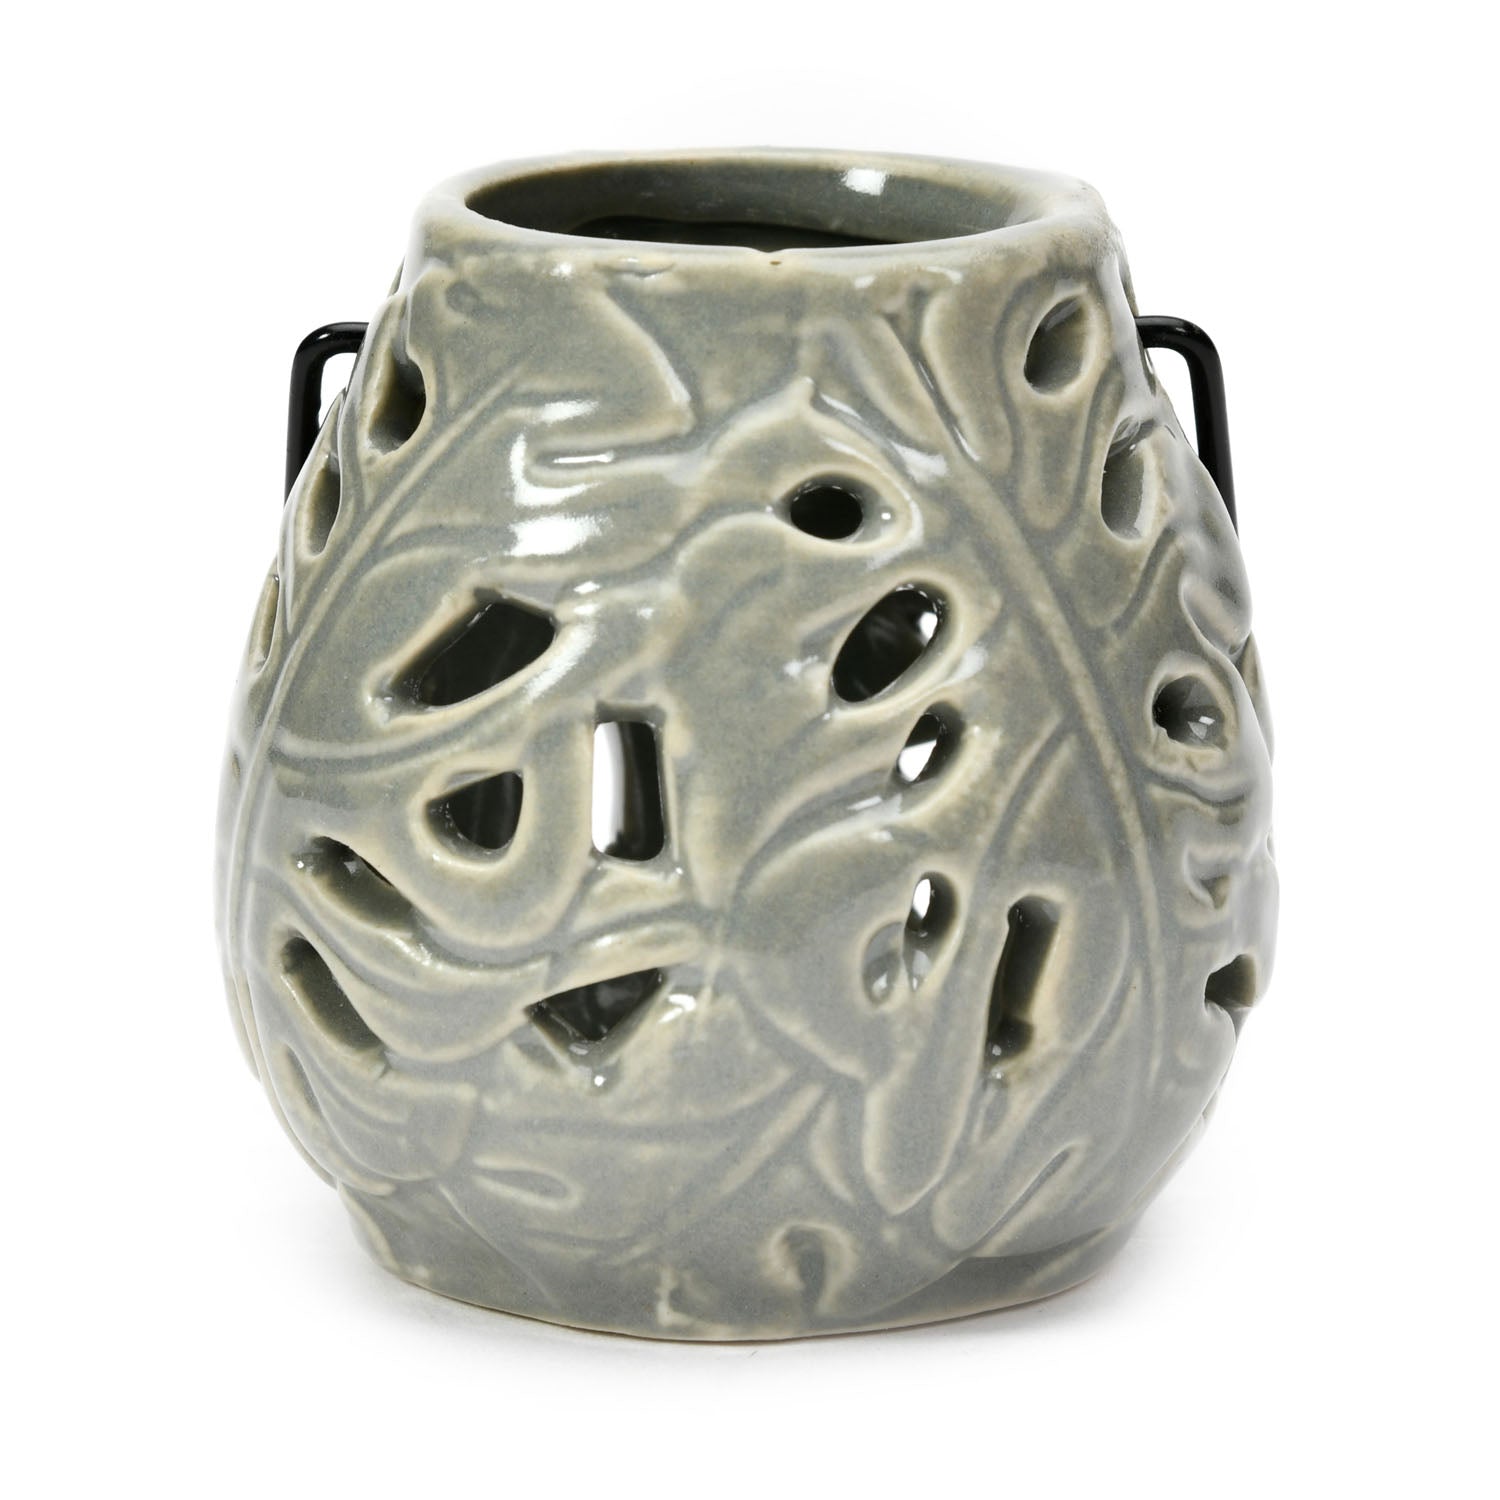 Palm Leaf Cutwork Ceramic Lantern (Grey)